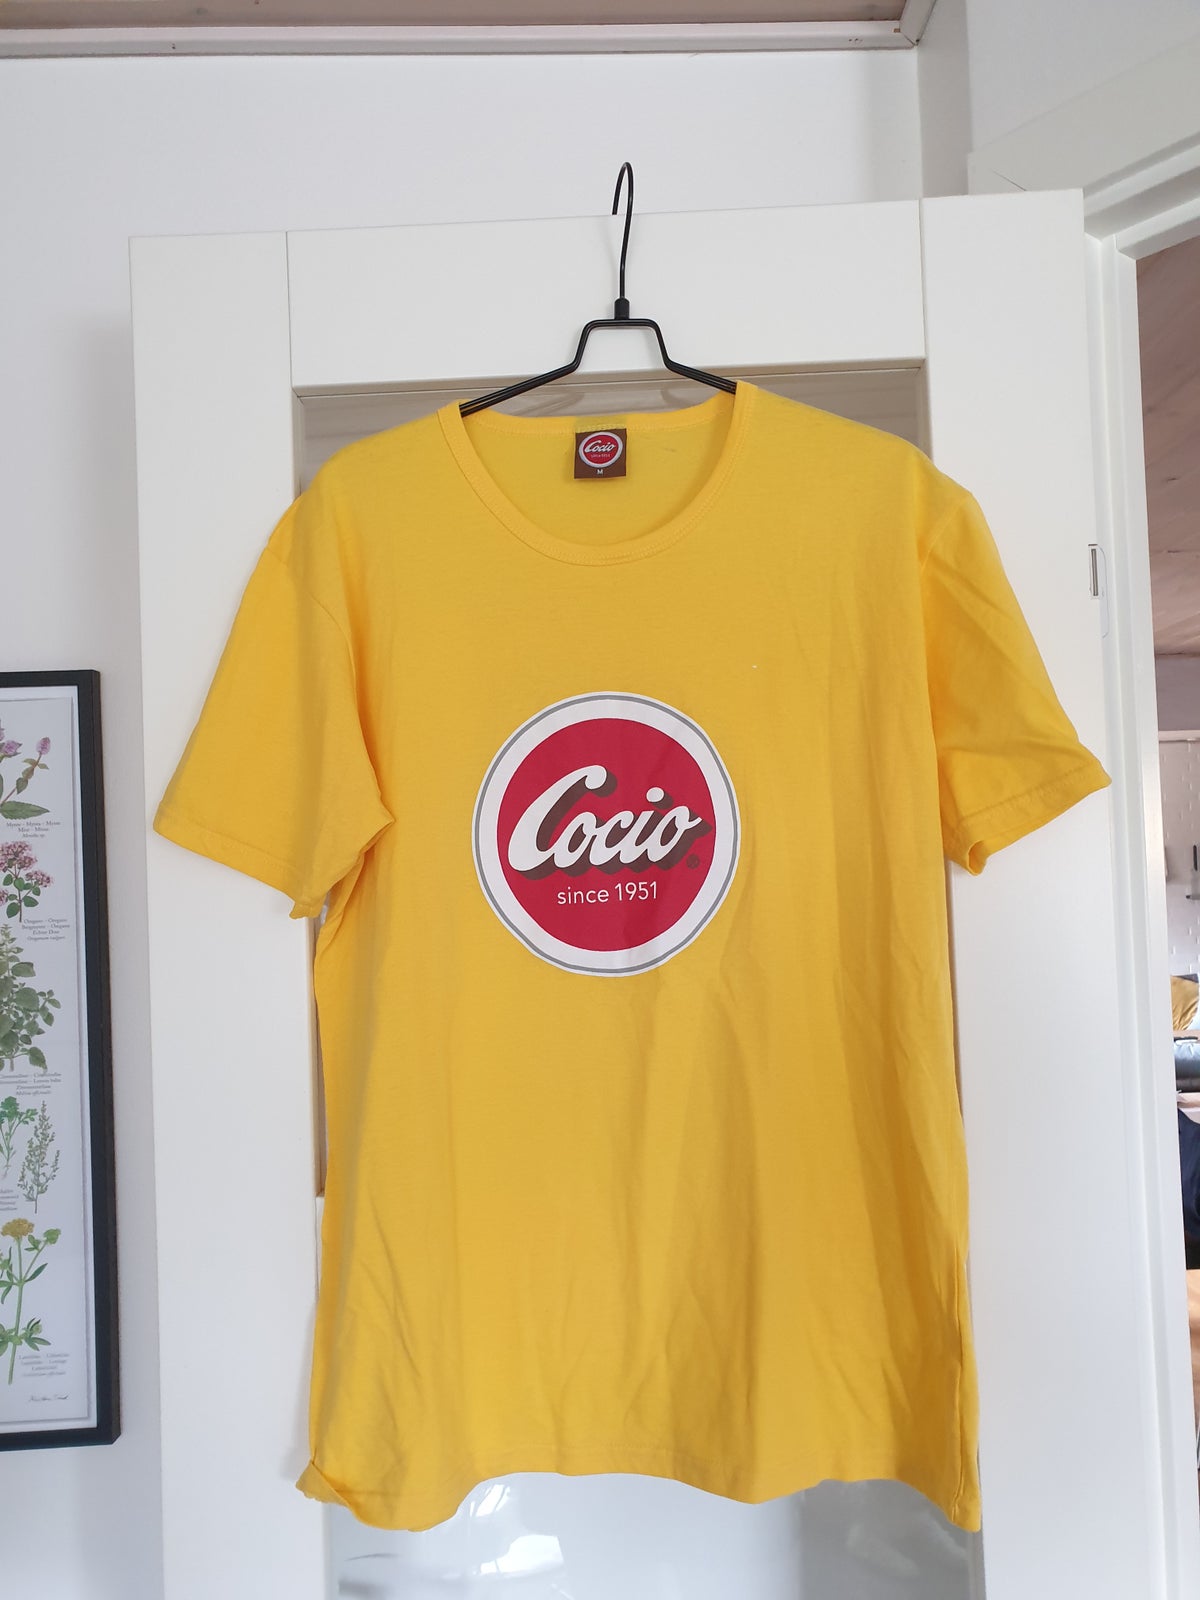 mere og mere Turist Geometri T-shirt, Cocio, str. M – dba.dk – Køb og Salg af Nyt og Brugt